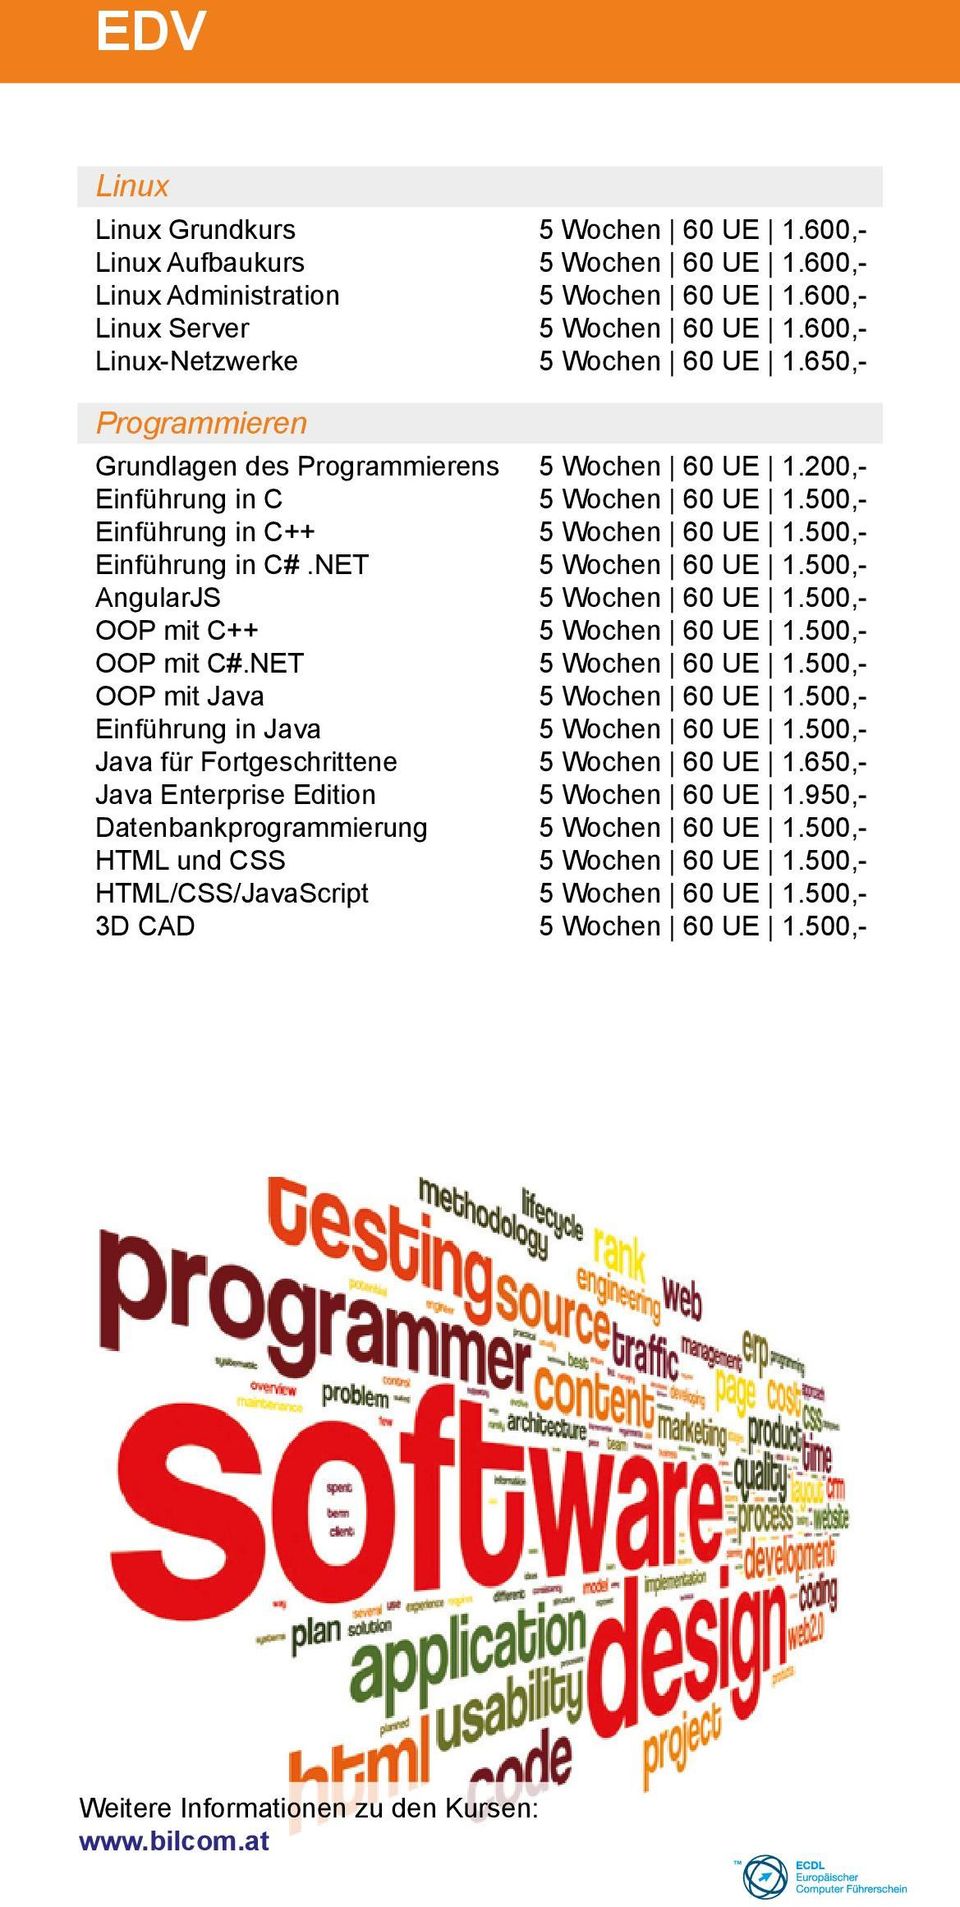 500,- Einführung in C#.NET 5 Wochen 60 UE 1.500,- AngularJS 5 Wochen 60 UE 1.500,- OOP mit C++ 5 Wochen 60 UE 1.500,- OOP mit C#.NET 5 Wochen 60 UE 1.500,- OOP mit Java 5 Wochen 60 UE 1.